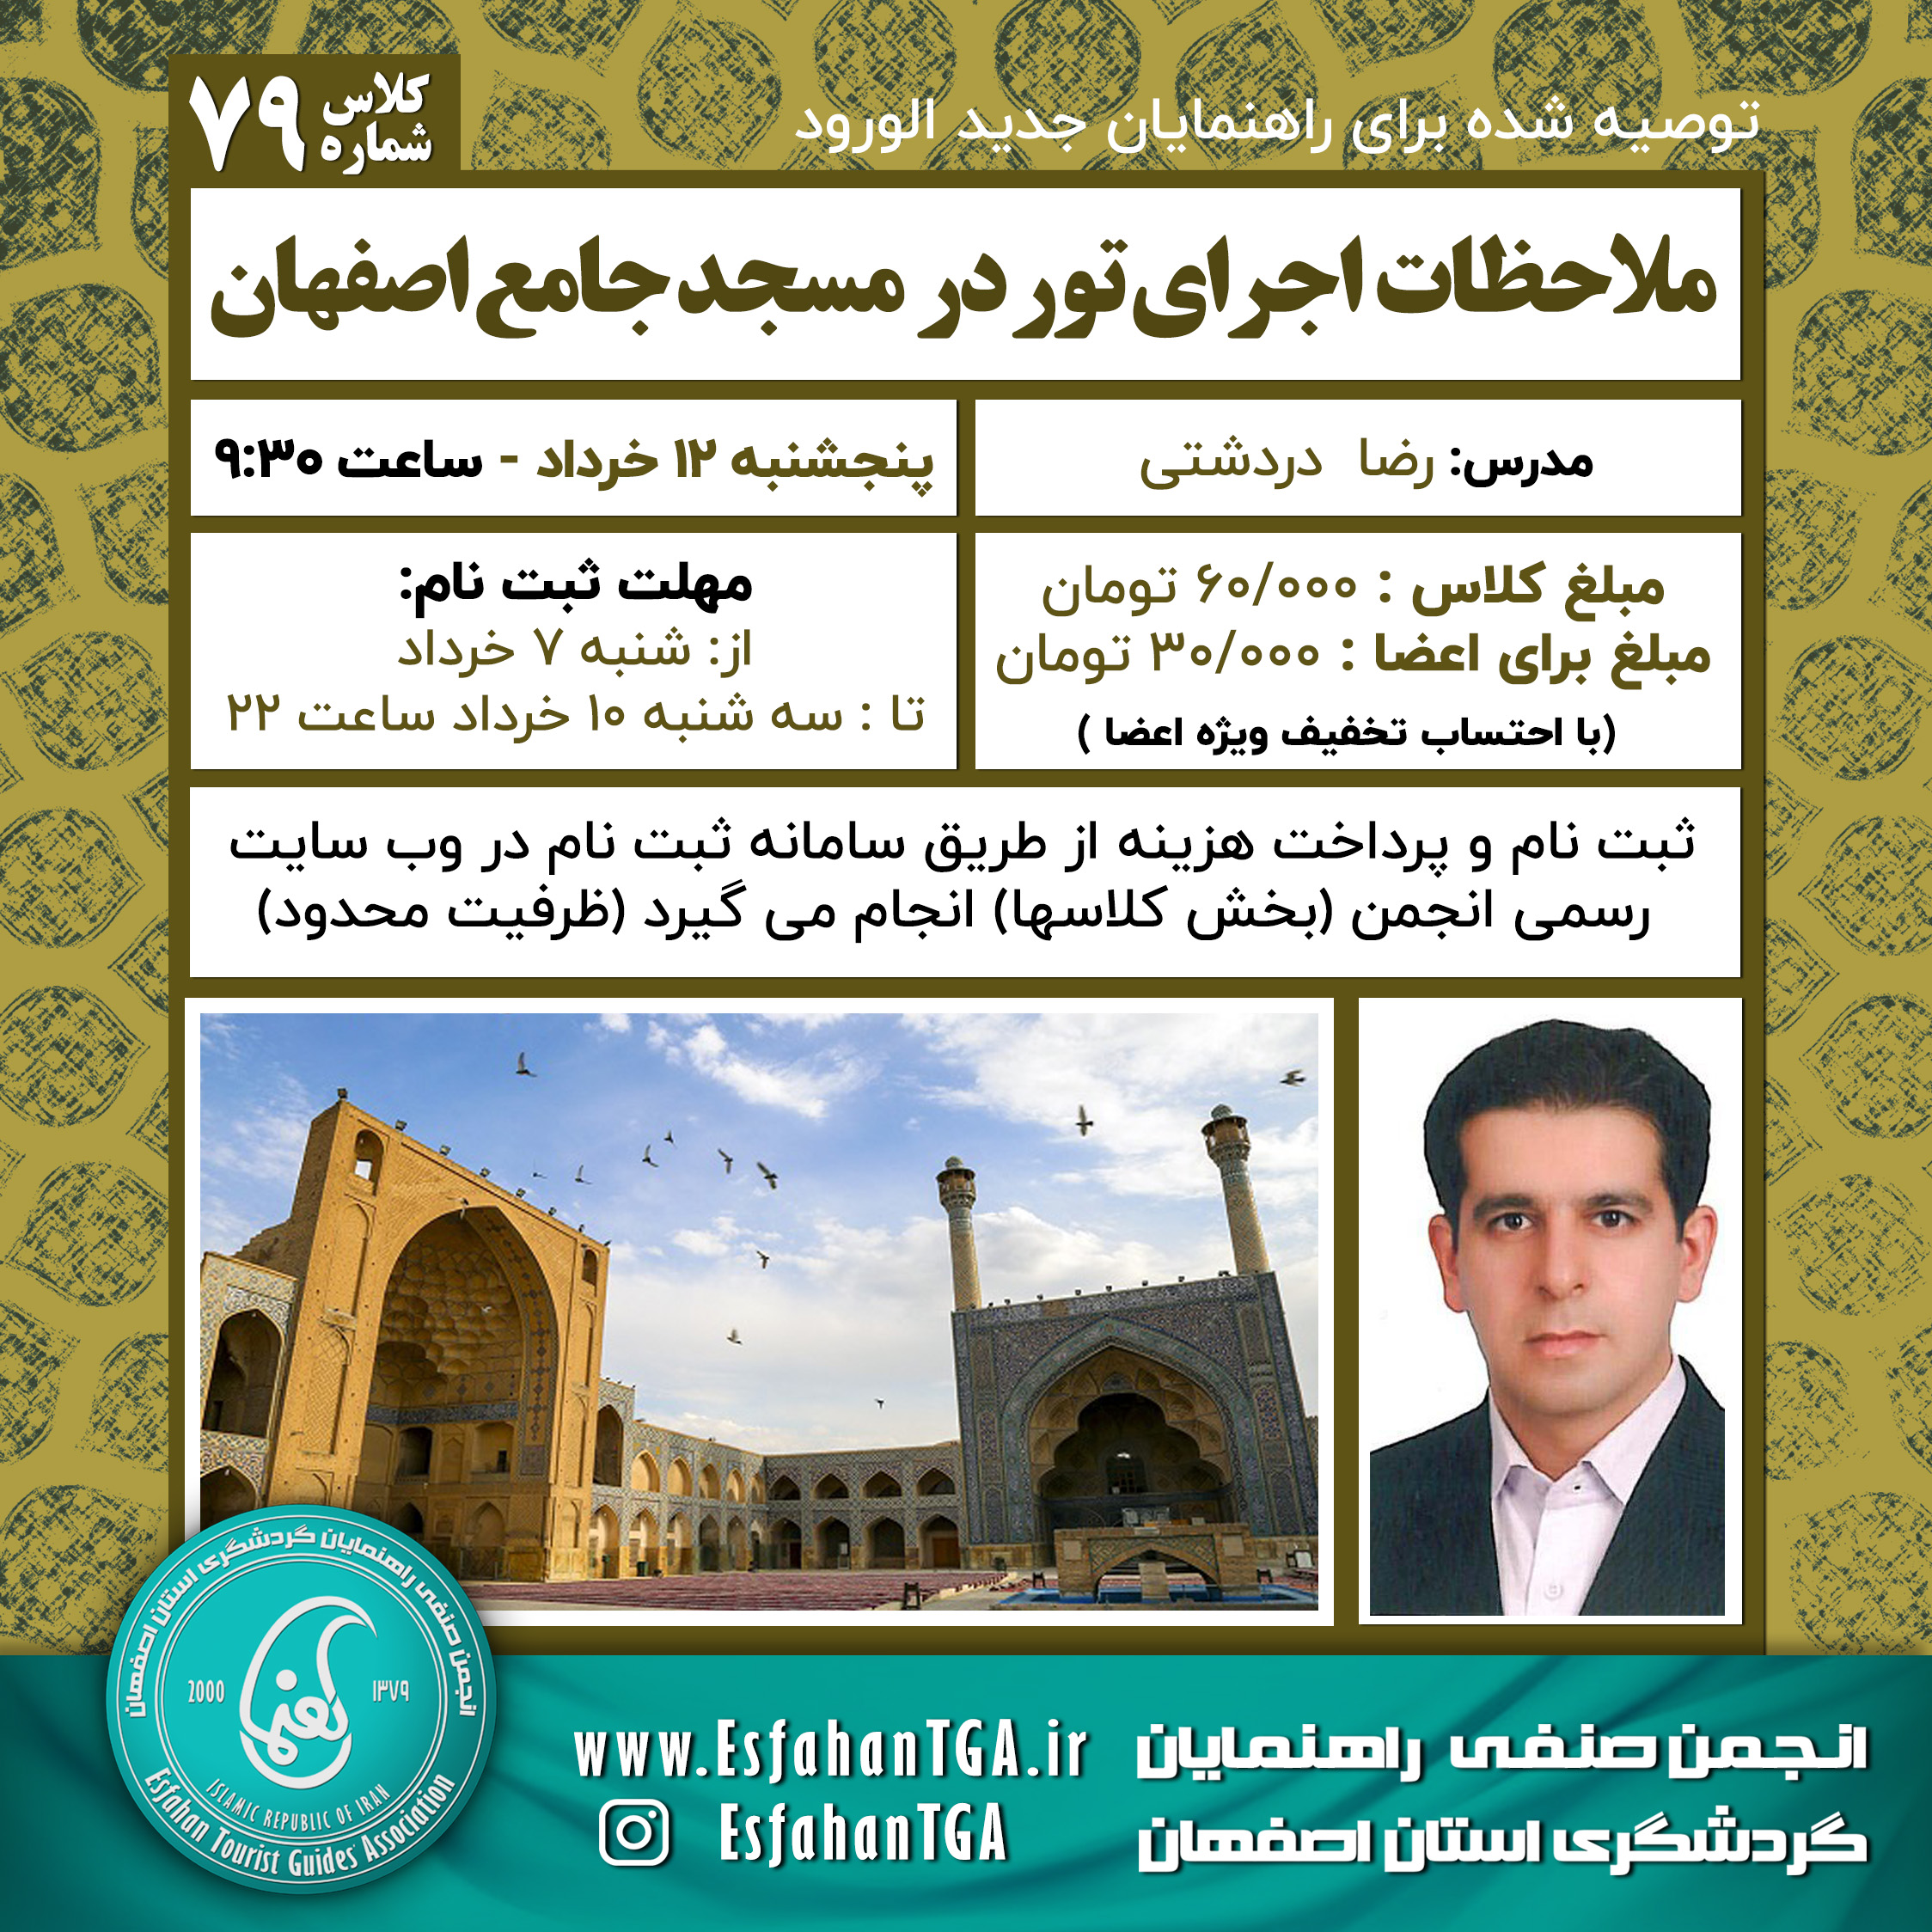 ملاحظات اجرای تور در مسجد جامع عتیق اصفهان